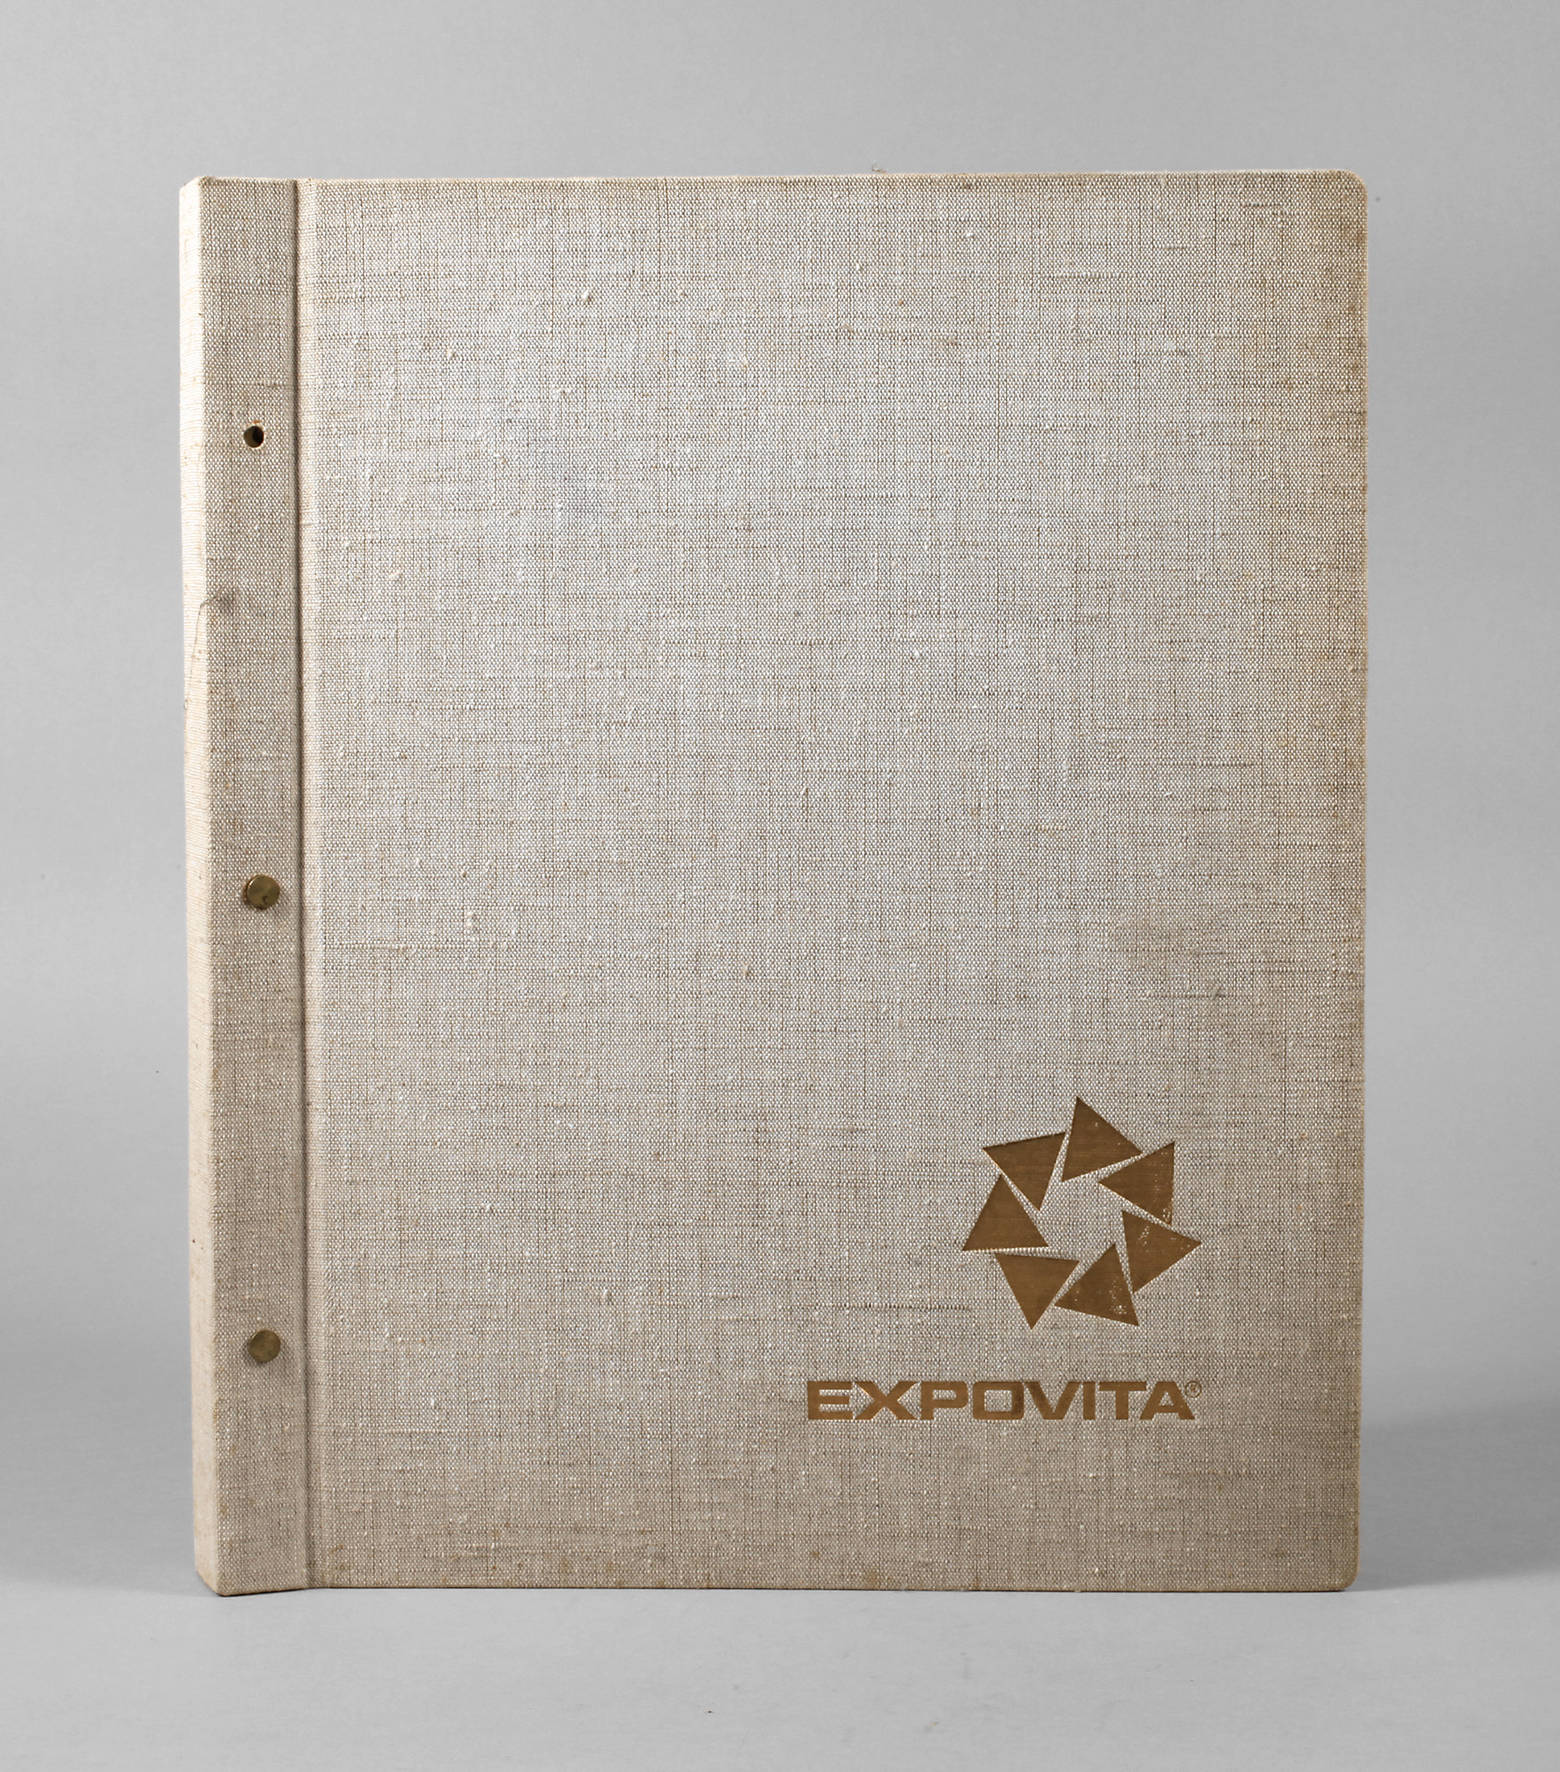 Fotoalbum Expovita 1979